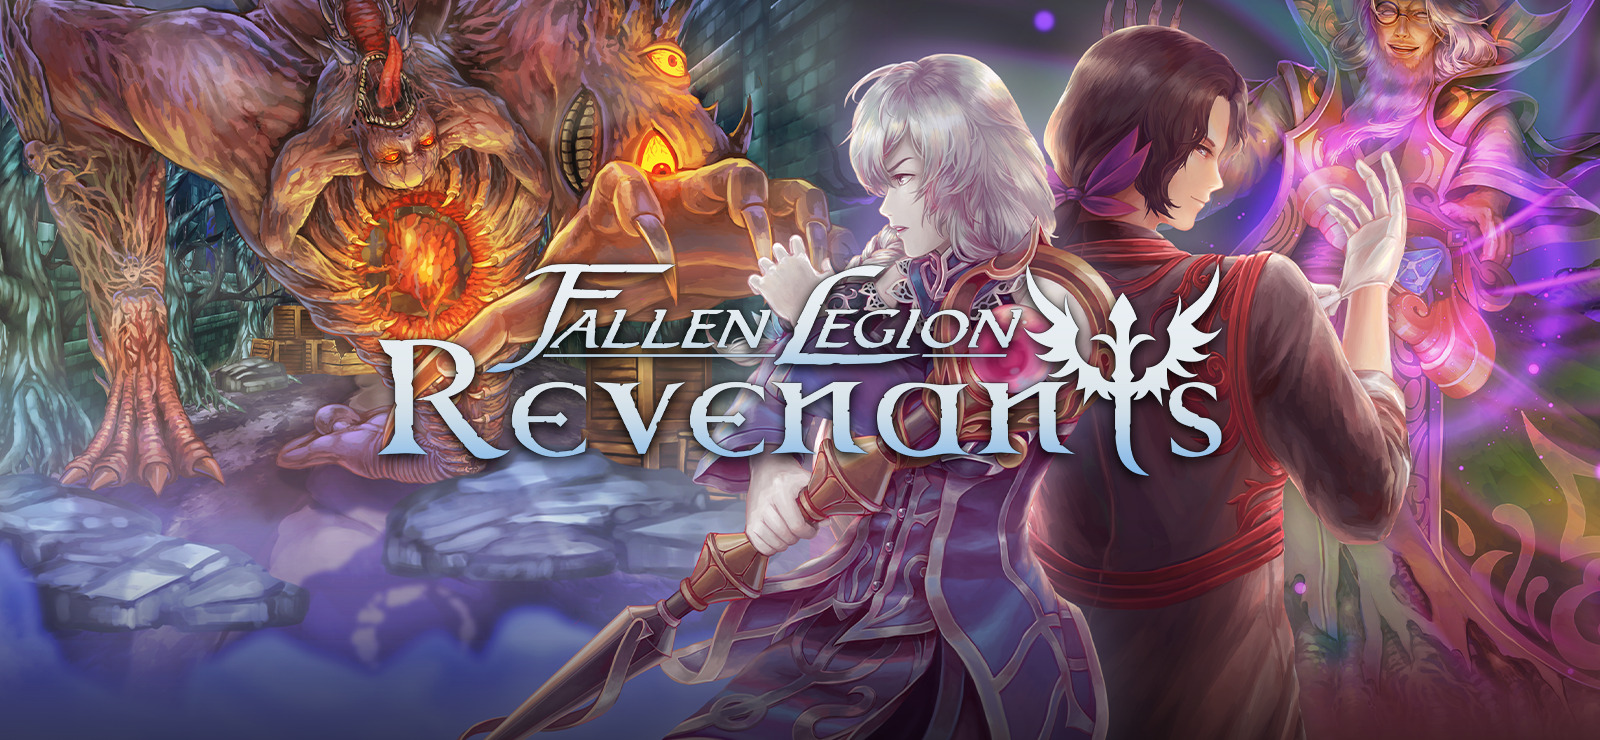 Fallen Legion Revenants free download